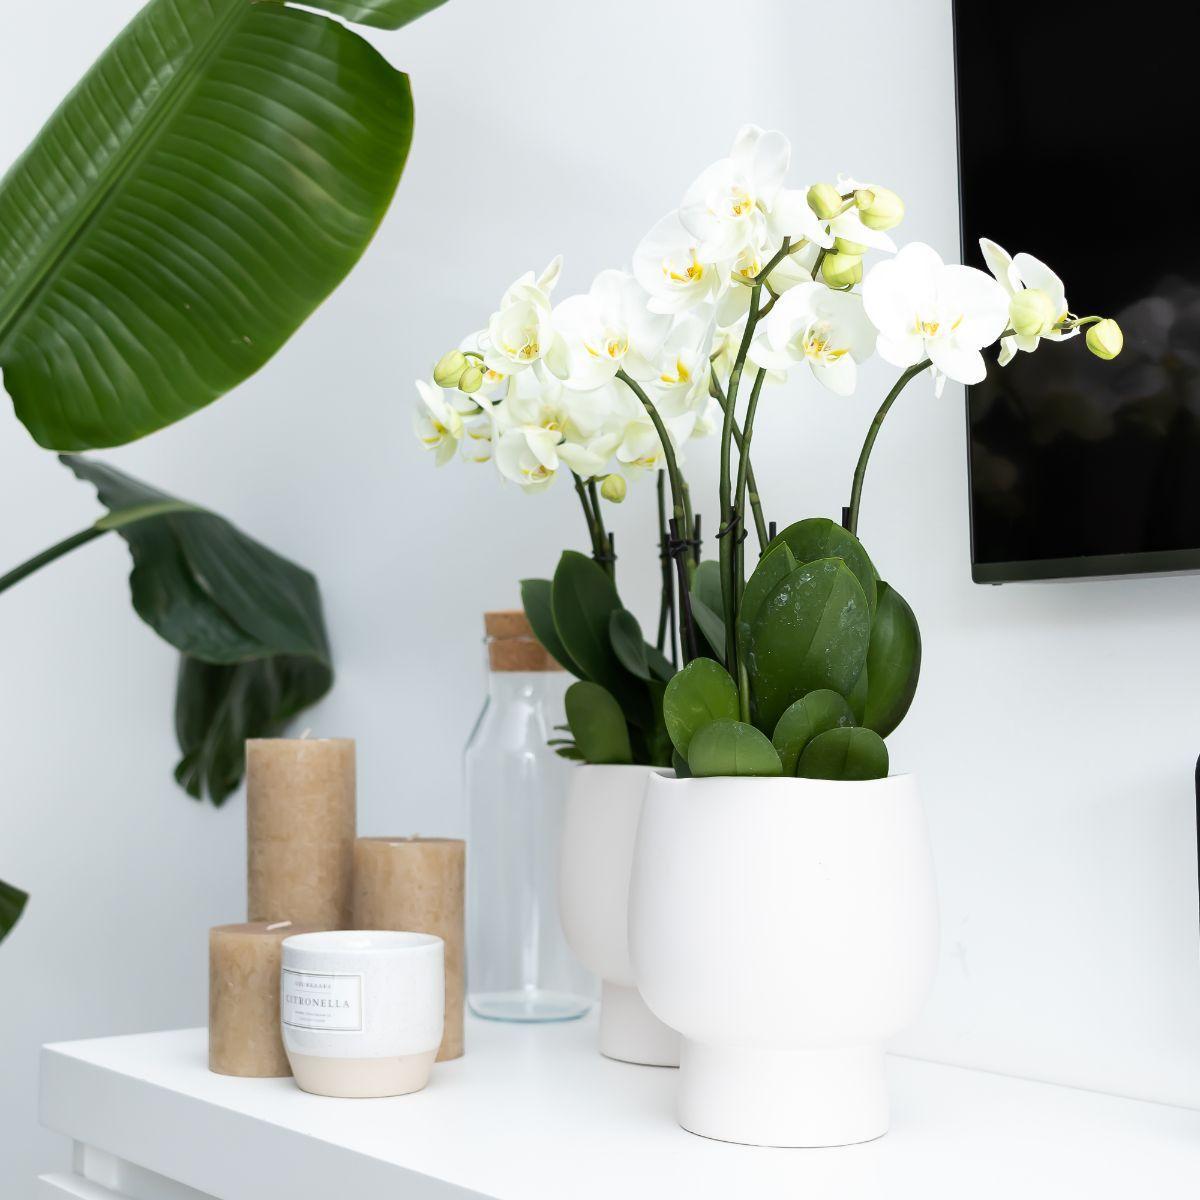 Livraison plante Orchidée blanche et son cache - pot blanc - plante d'intérieur fleurie